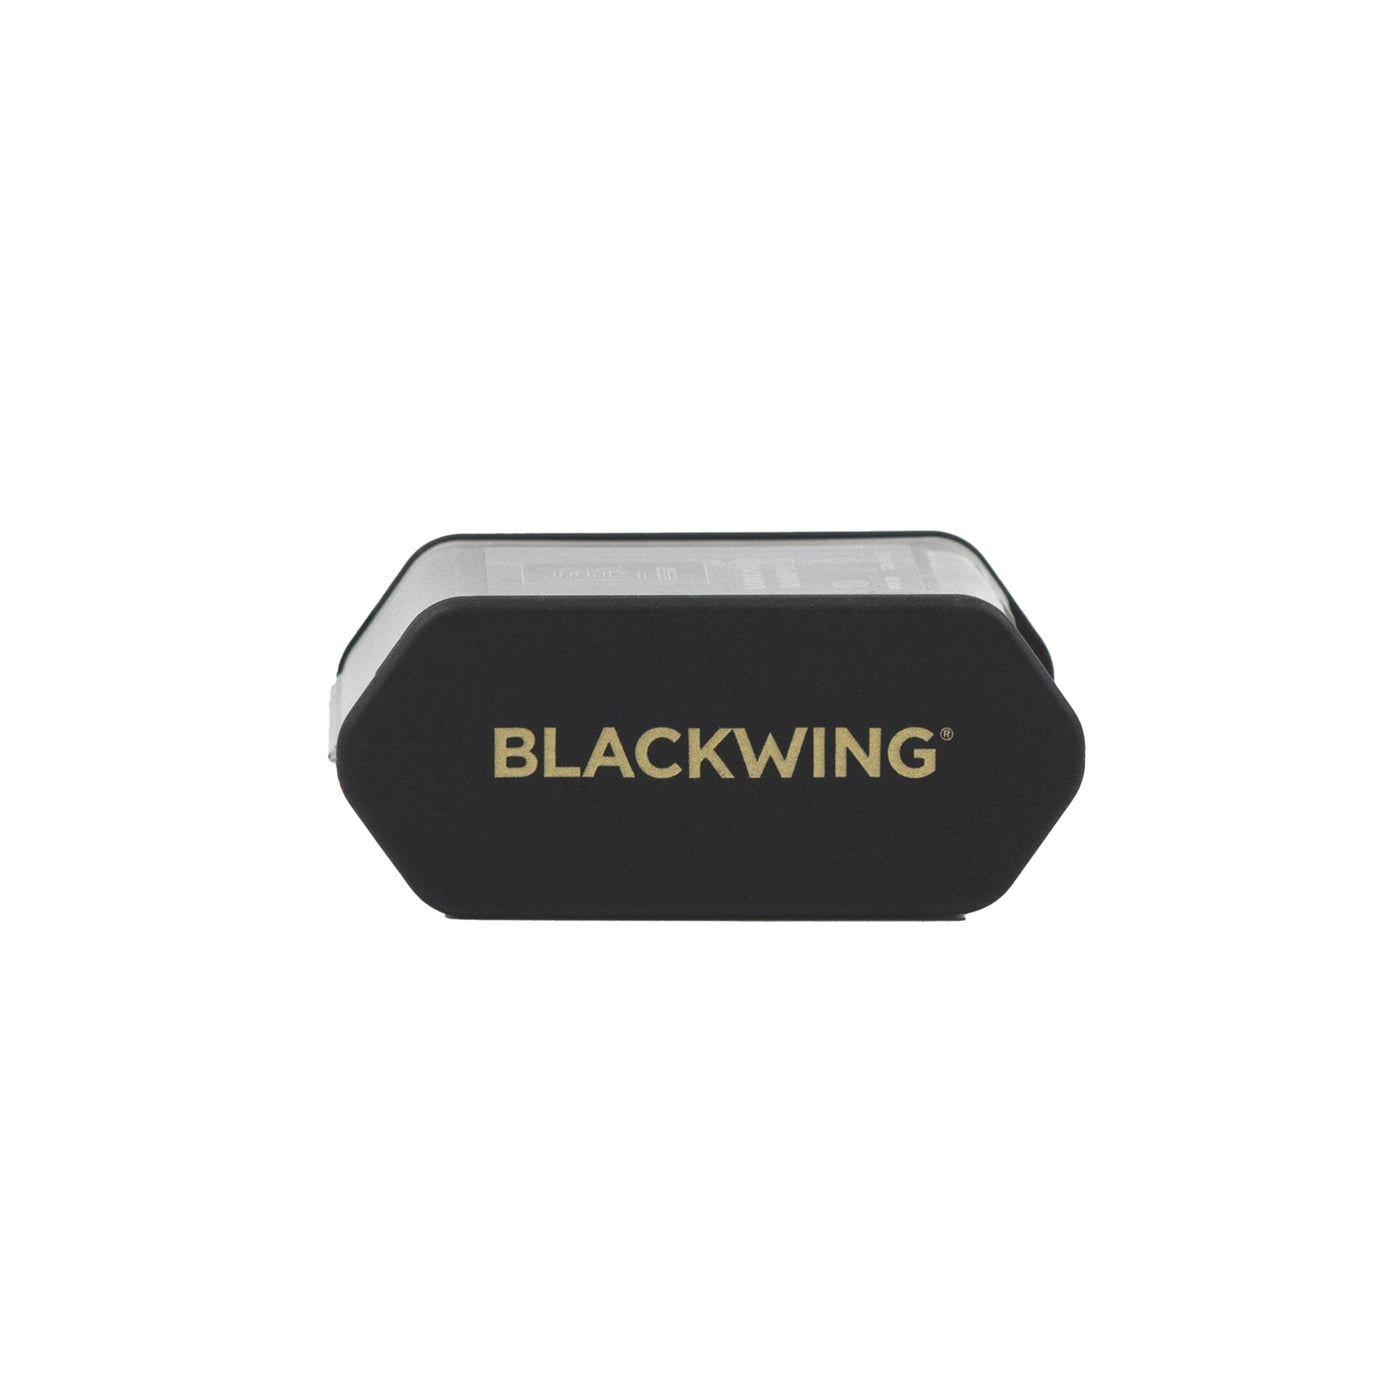 Blackwing 2-Step Sharpener